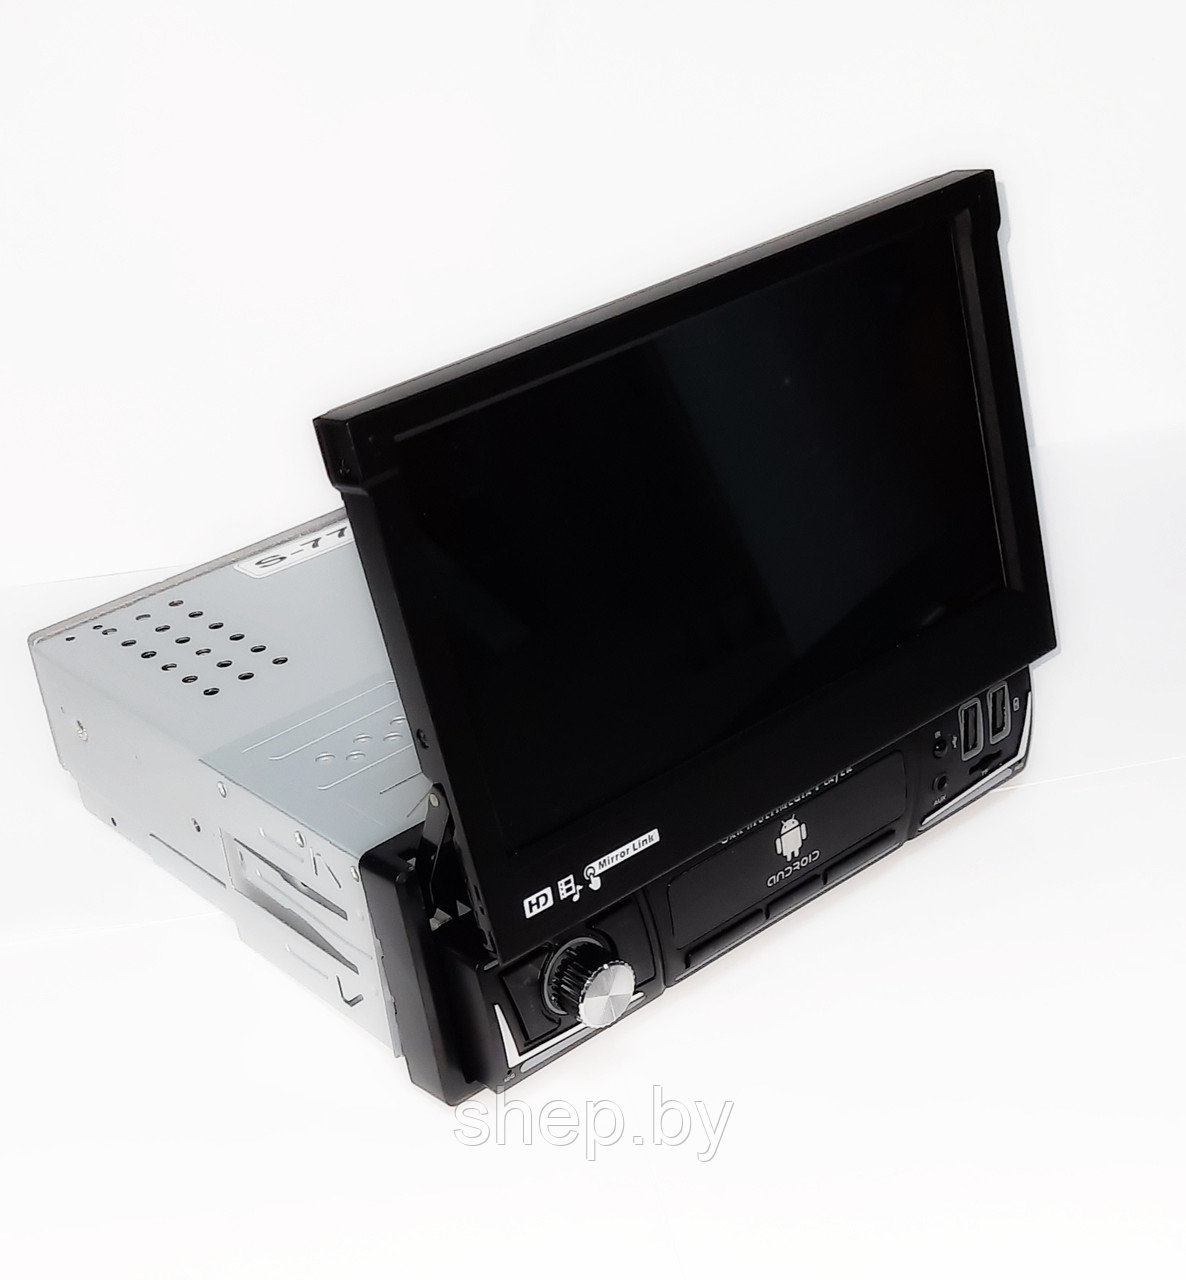 Выдвижная 1DIN магнитола Pro.Pioneer S-7702 с сенсорным 7 дюймовым HD экраном, Bluetooth, AUX, SD, USB Android